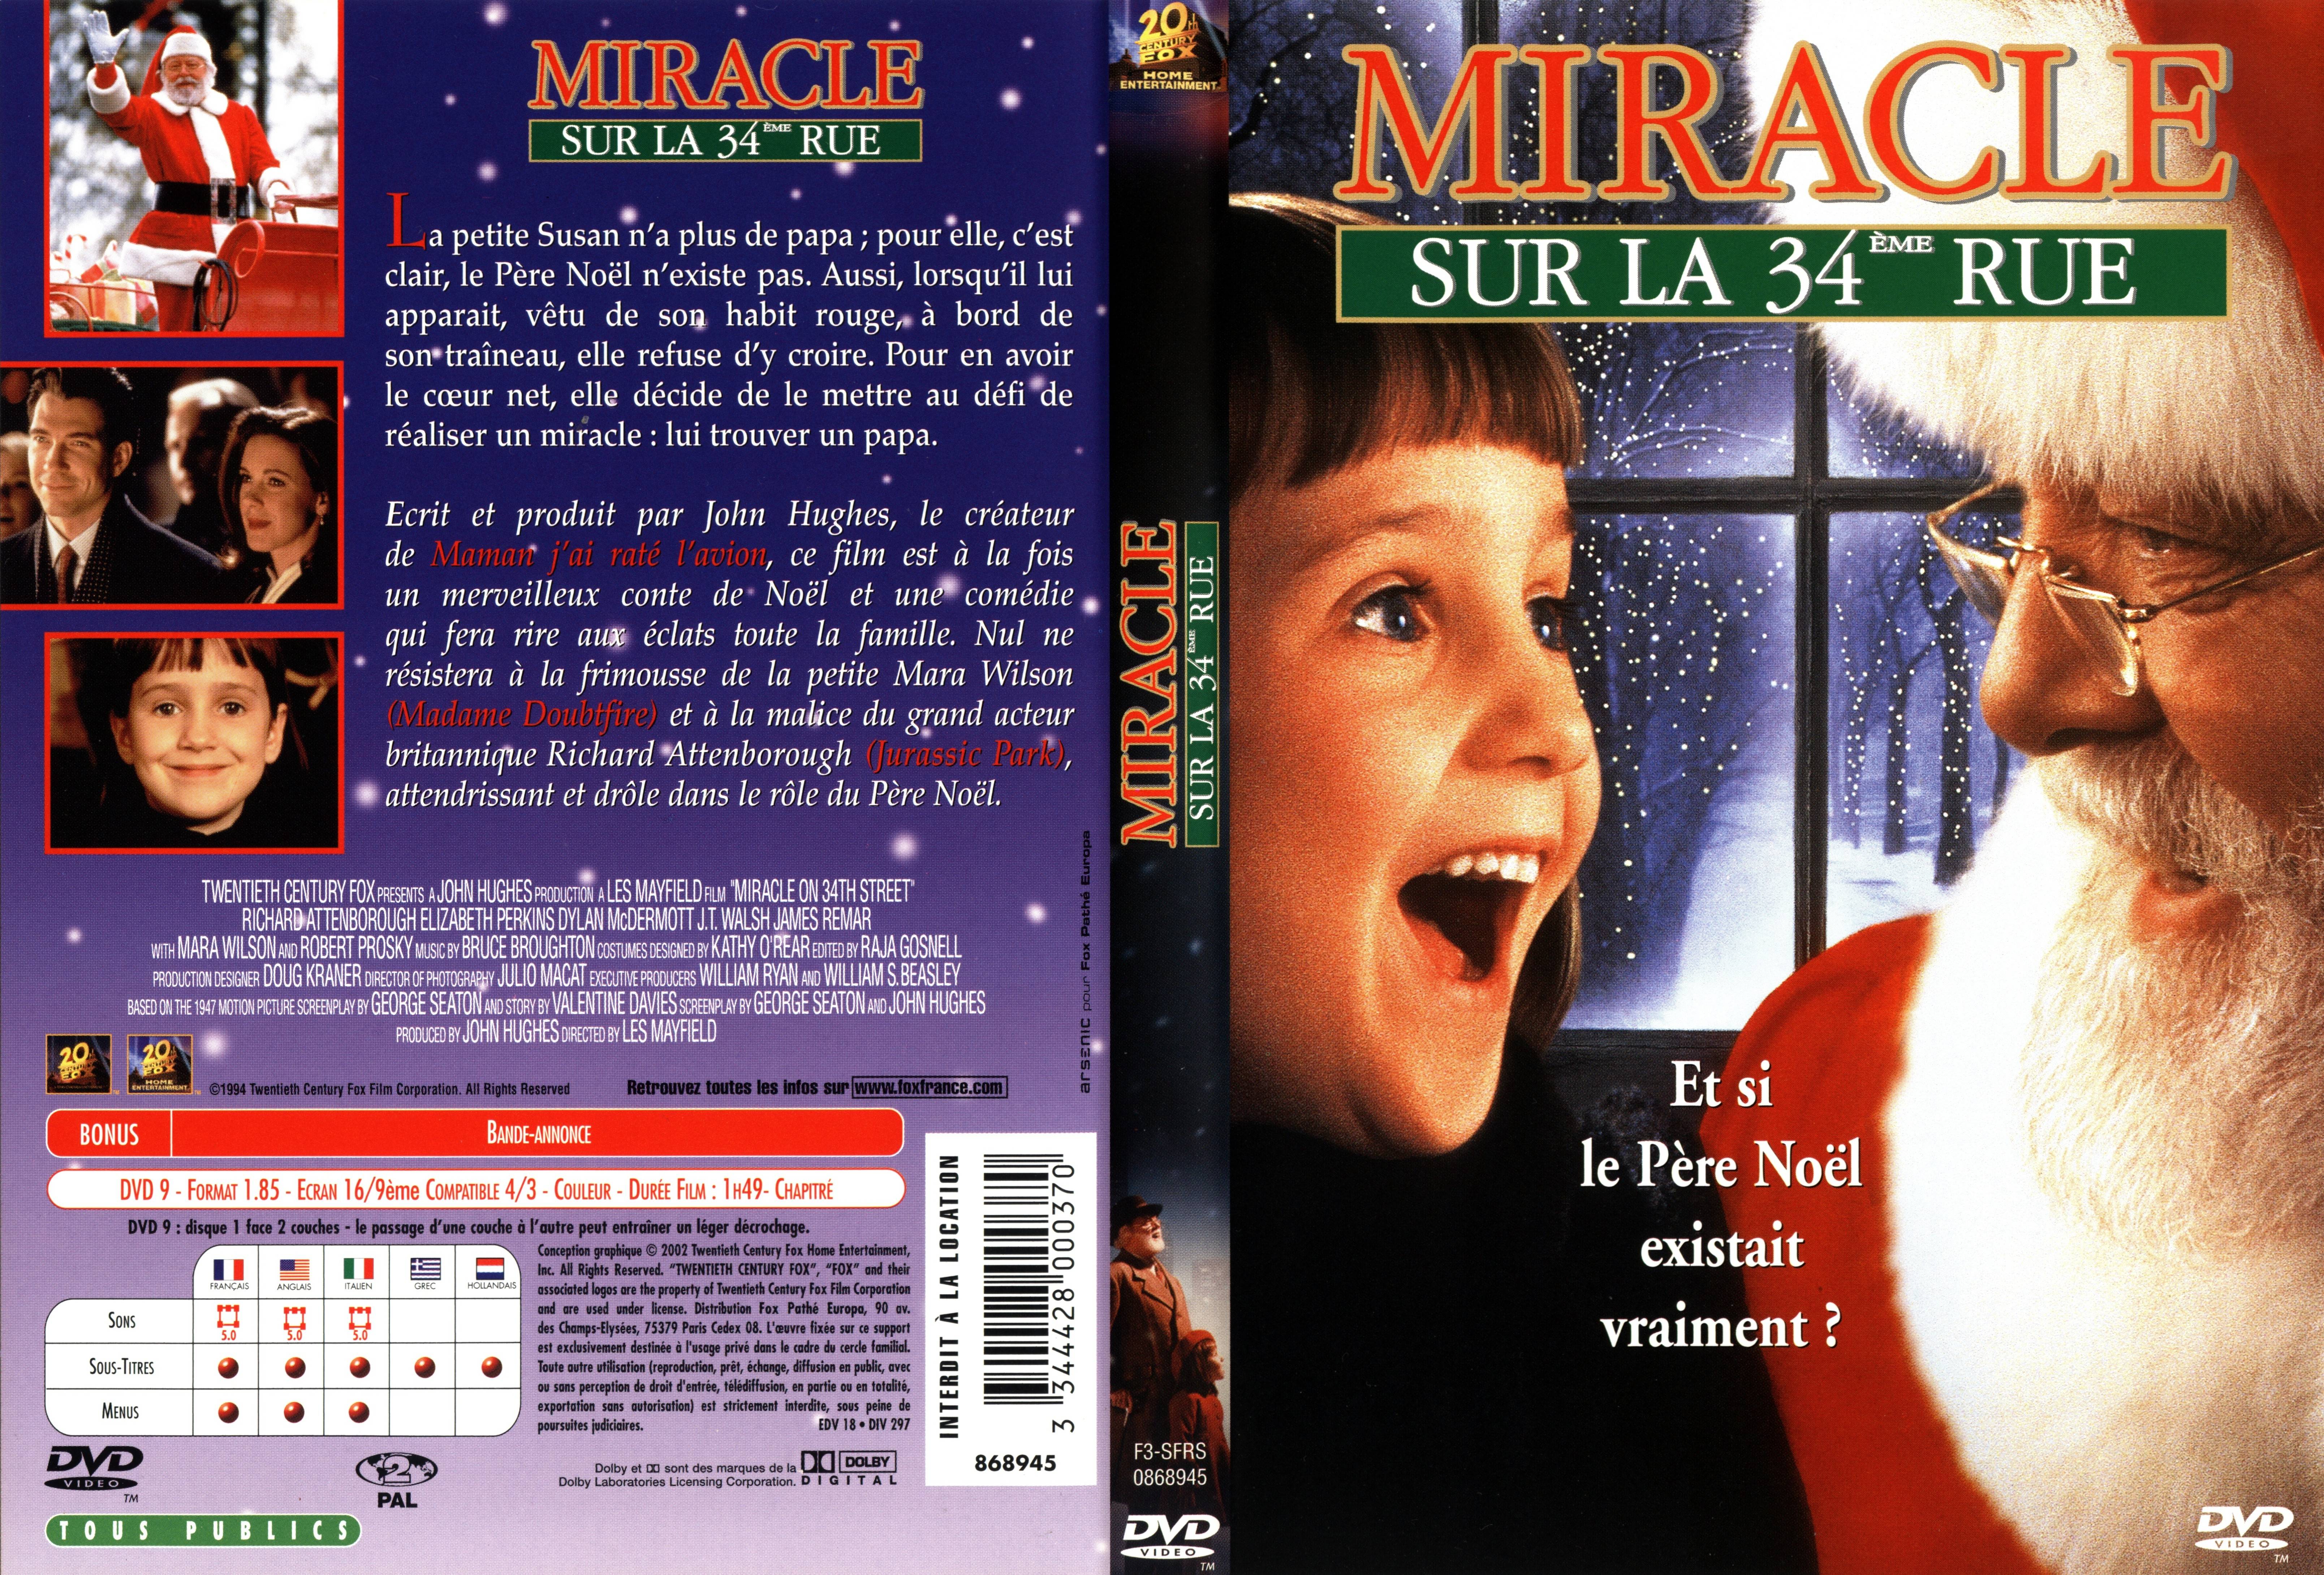 Jaquette DVD Miracle sur la 34 eme rue